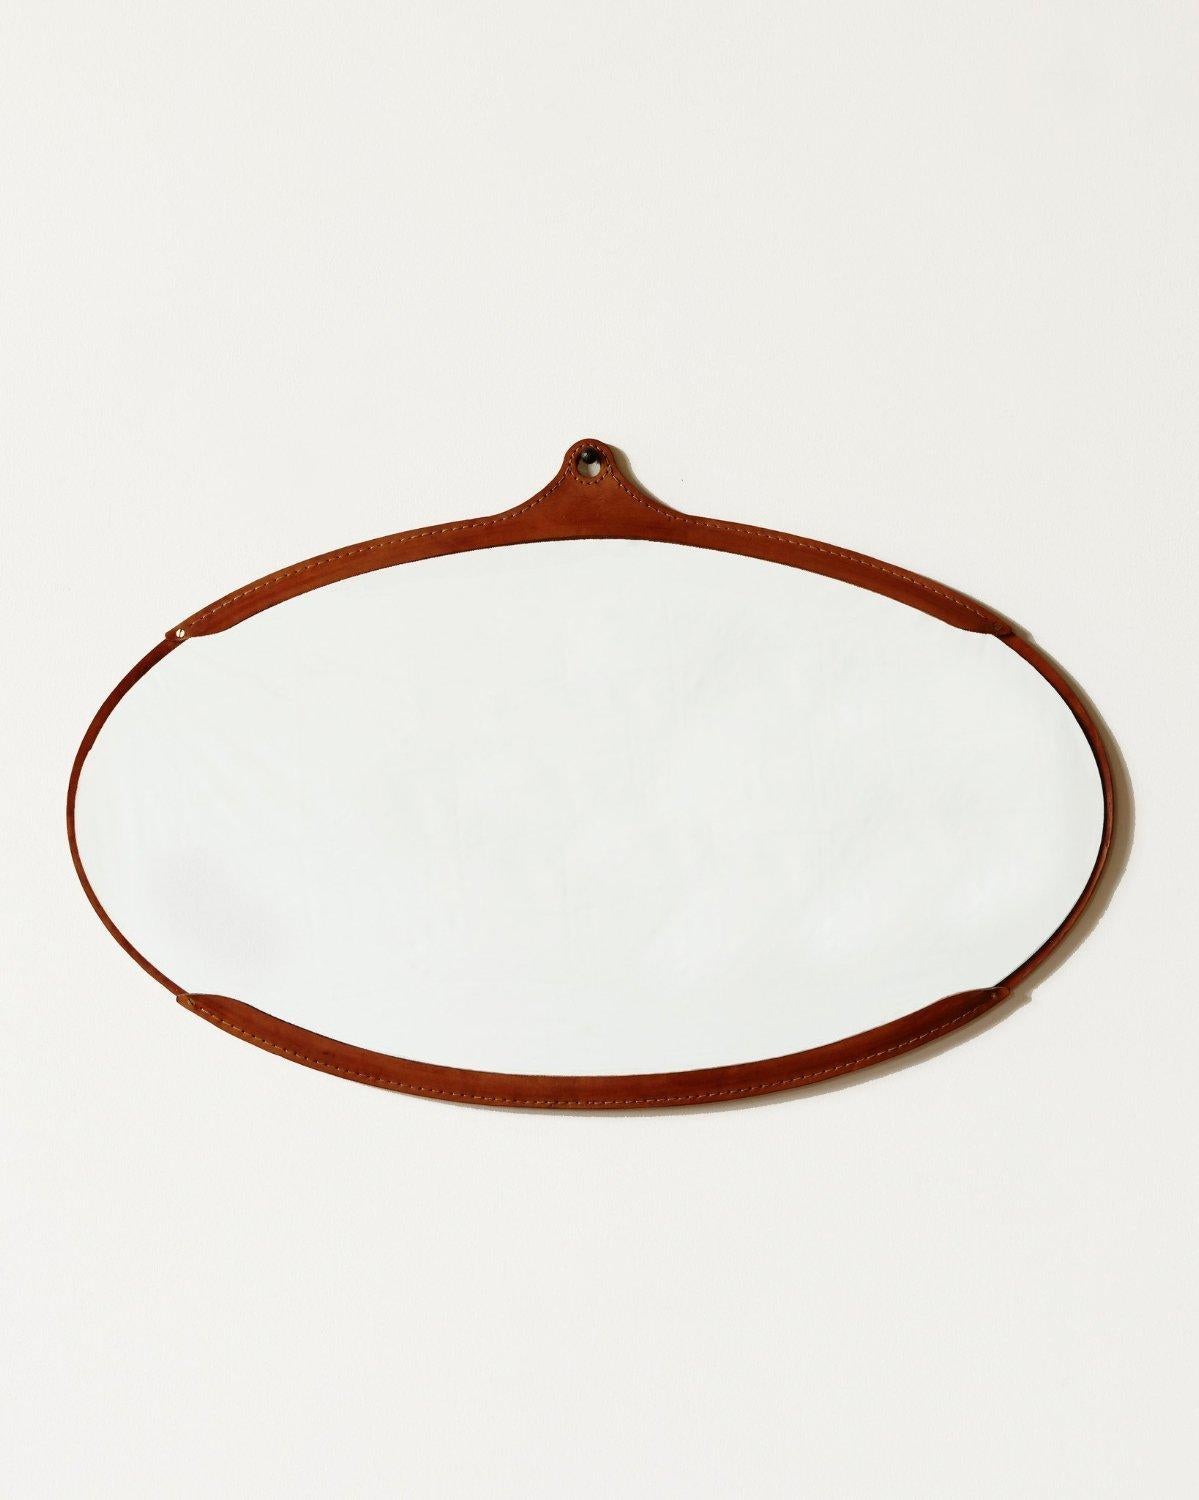 Le miroir ovale large fairmount est un miroir en cuir cousu à la main avec un cadre en cuir naturel tanné au végétal dont la couleur varie et s'assombrit légèrement avec l'âge. Le miroir se place à l'intérieur du cadre comme une poche. Il est livré